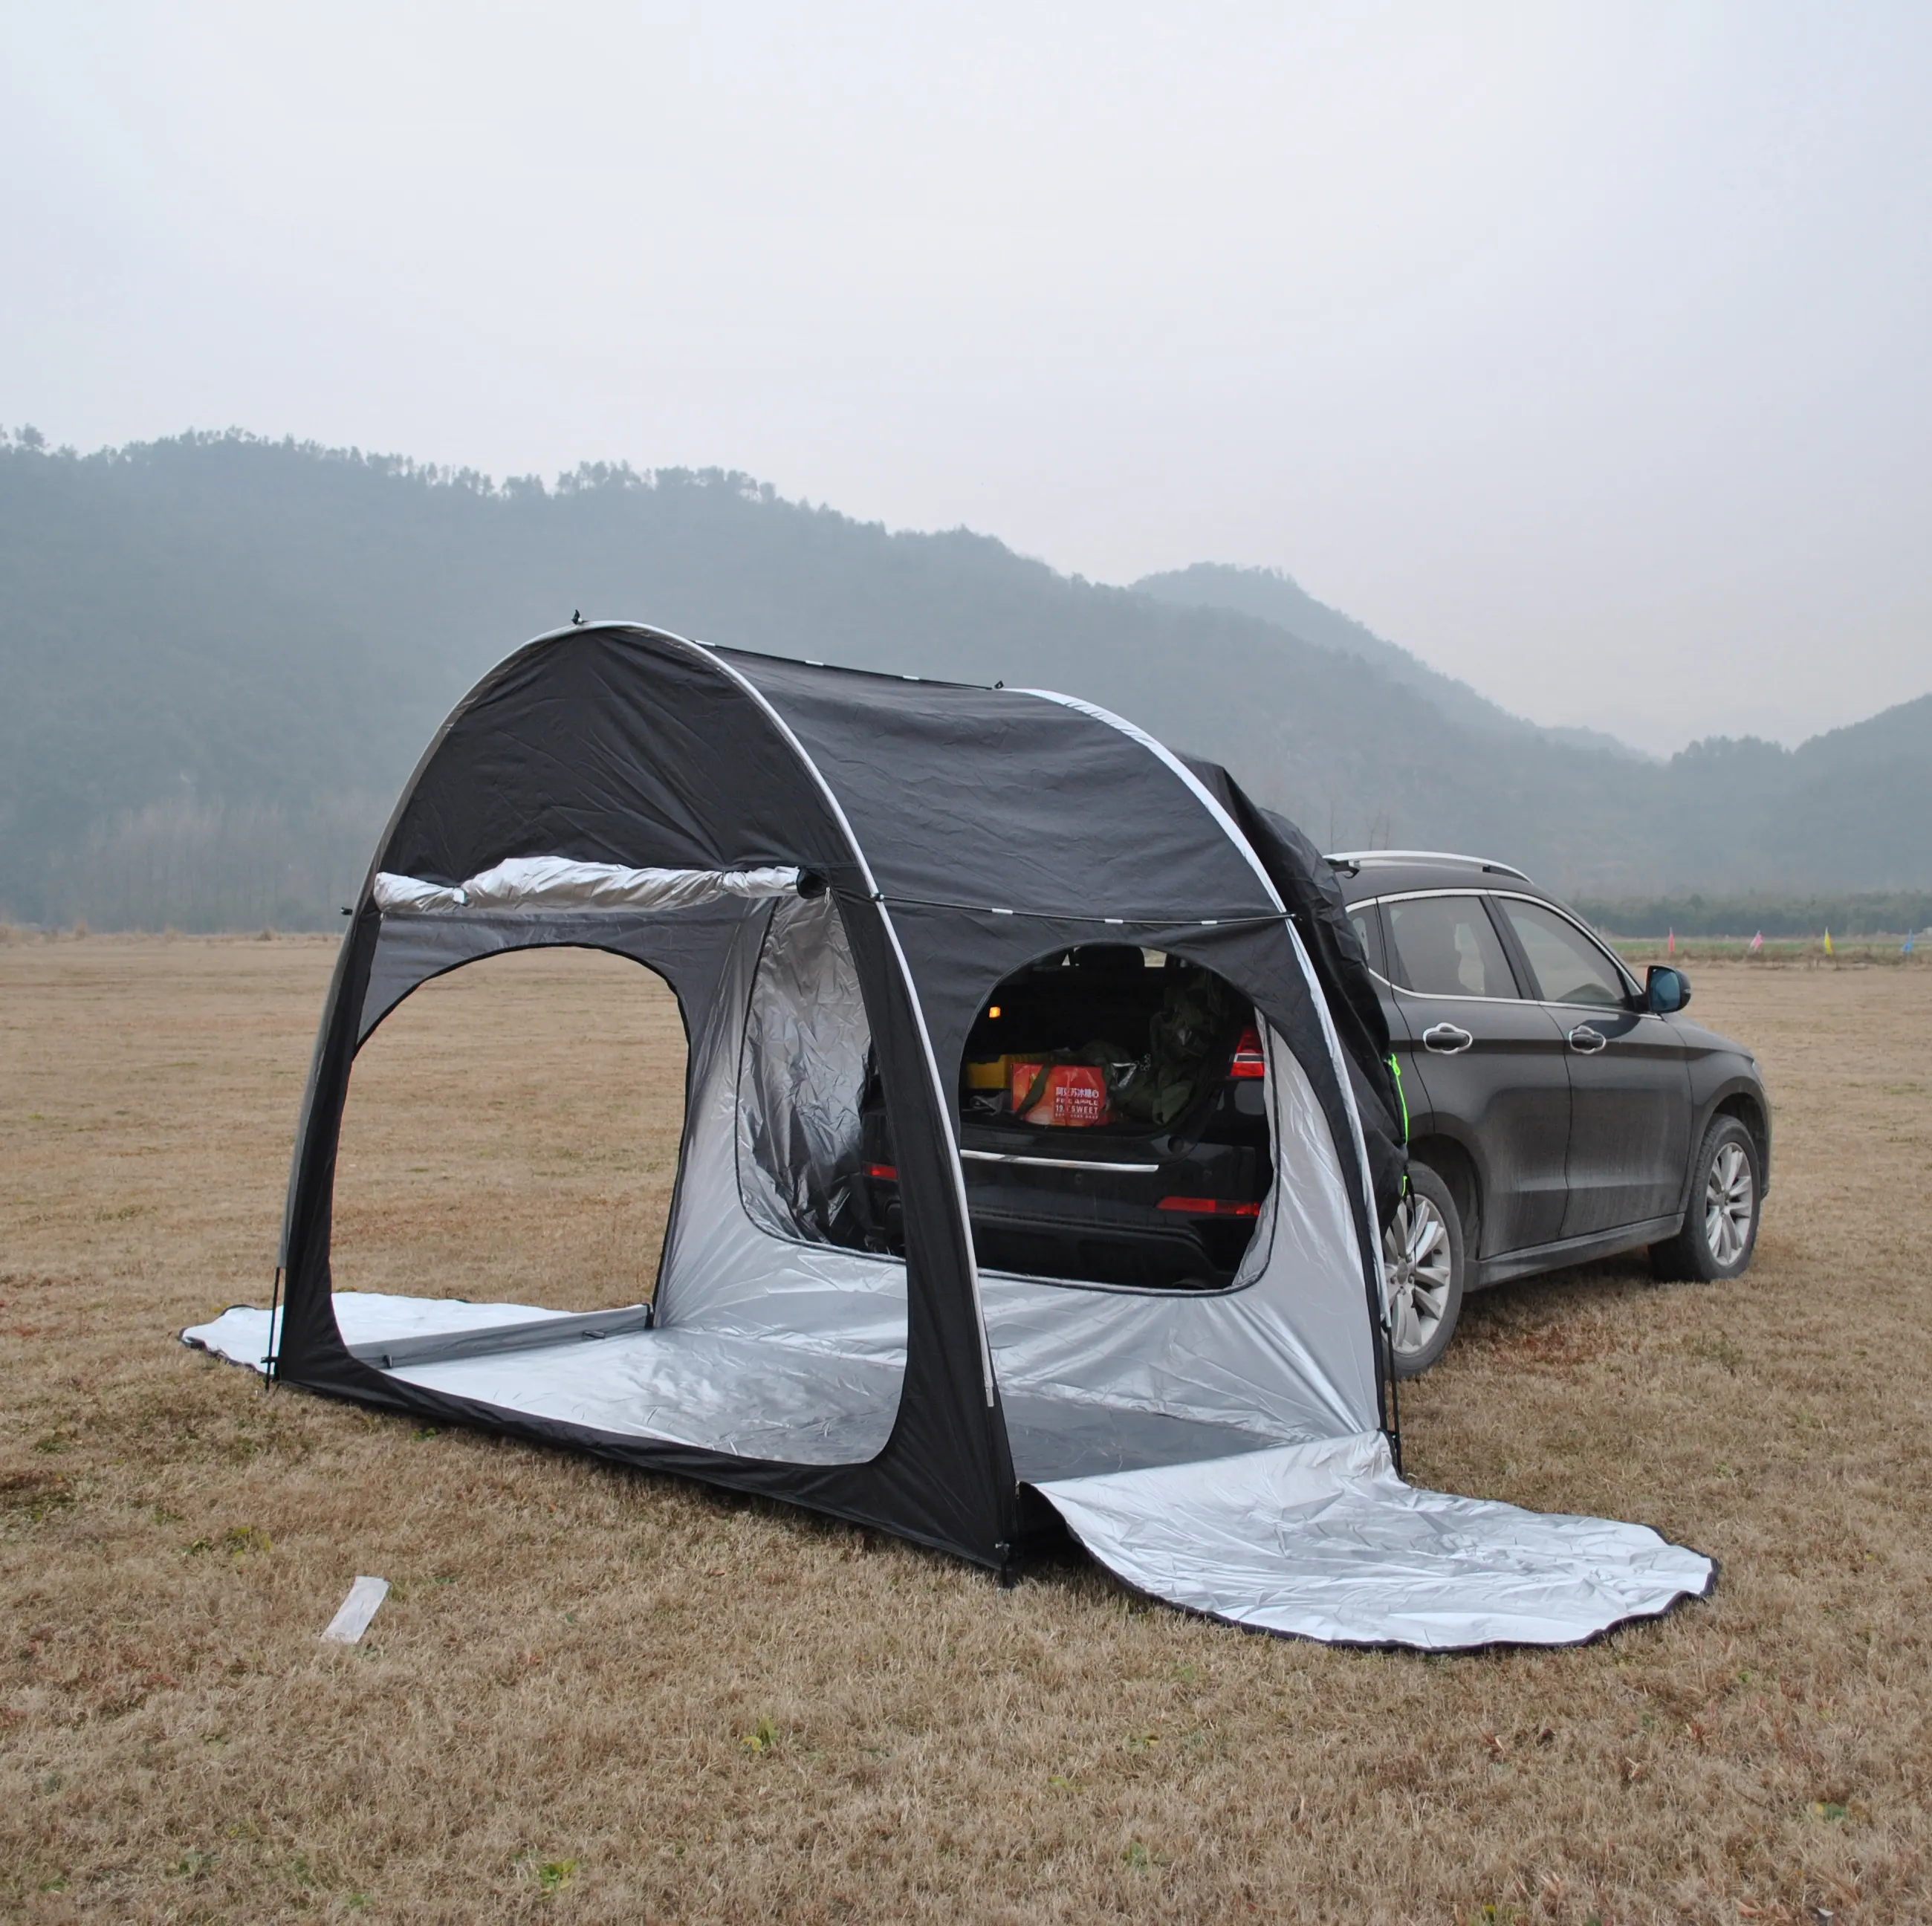 CZX-557 автомобильный тент от солнца тент укрытие, SUV задний палатка, портативный Водонепроницаемый заднего палатка может использоваться как велосипед палатка или шатер хранения